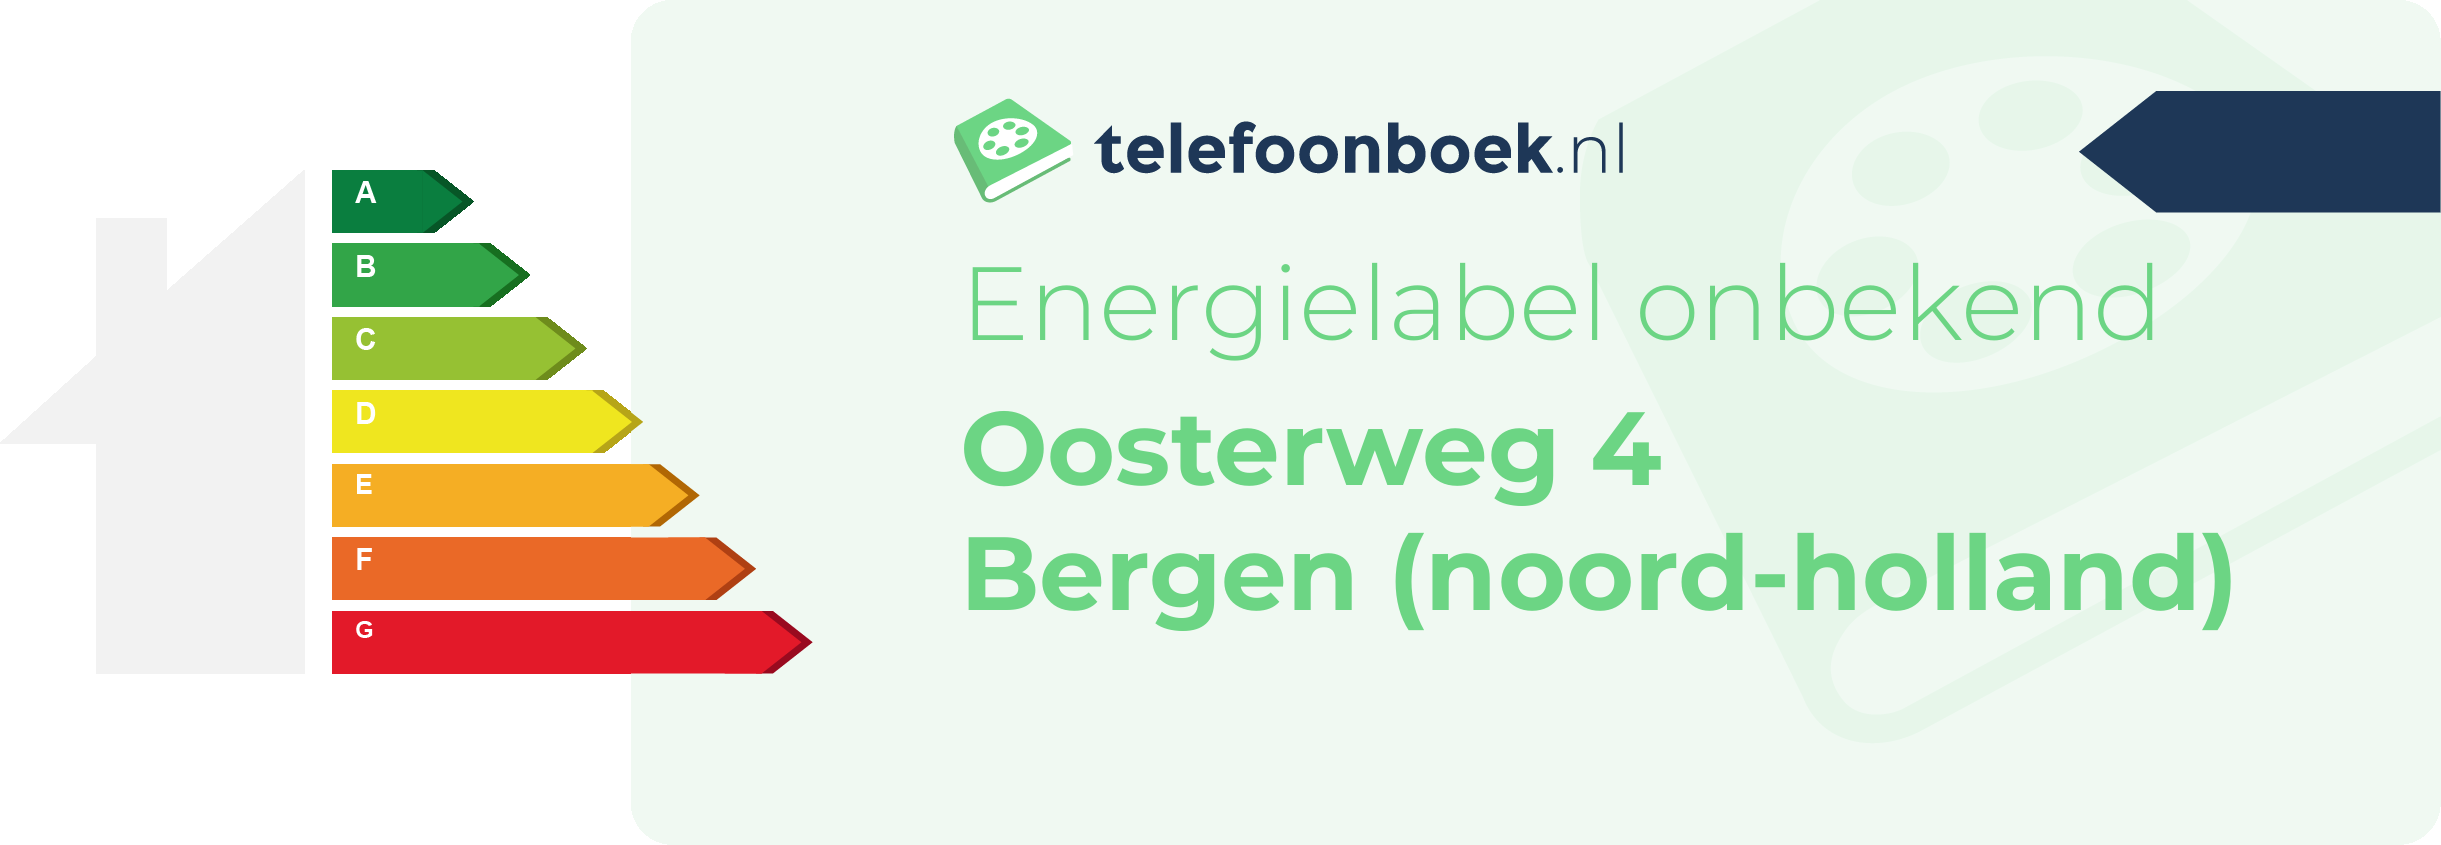 Energielabel Oosterweg 4 Bergen (Noord-Holland)